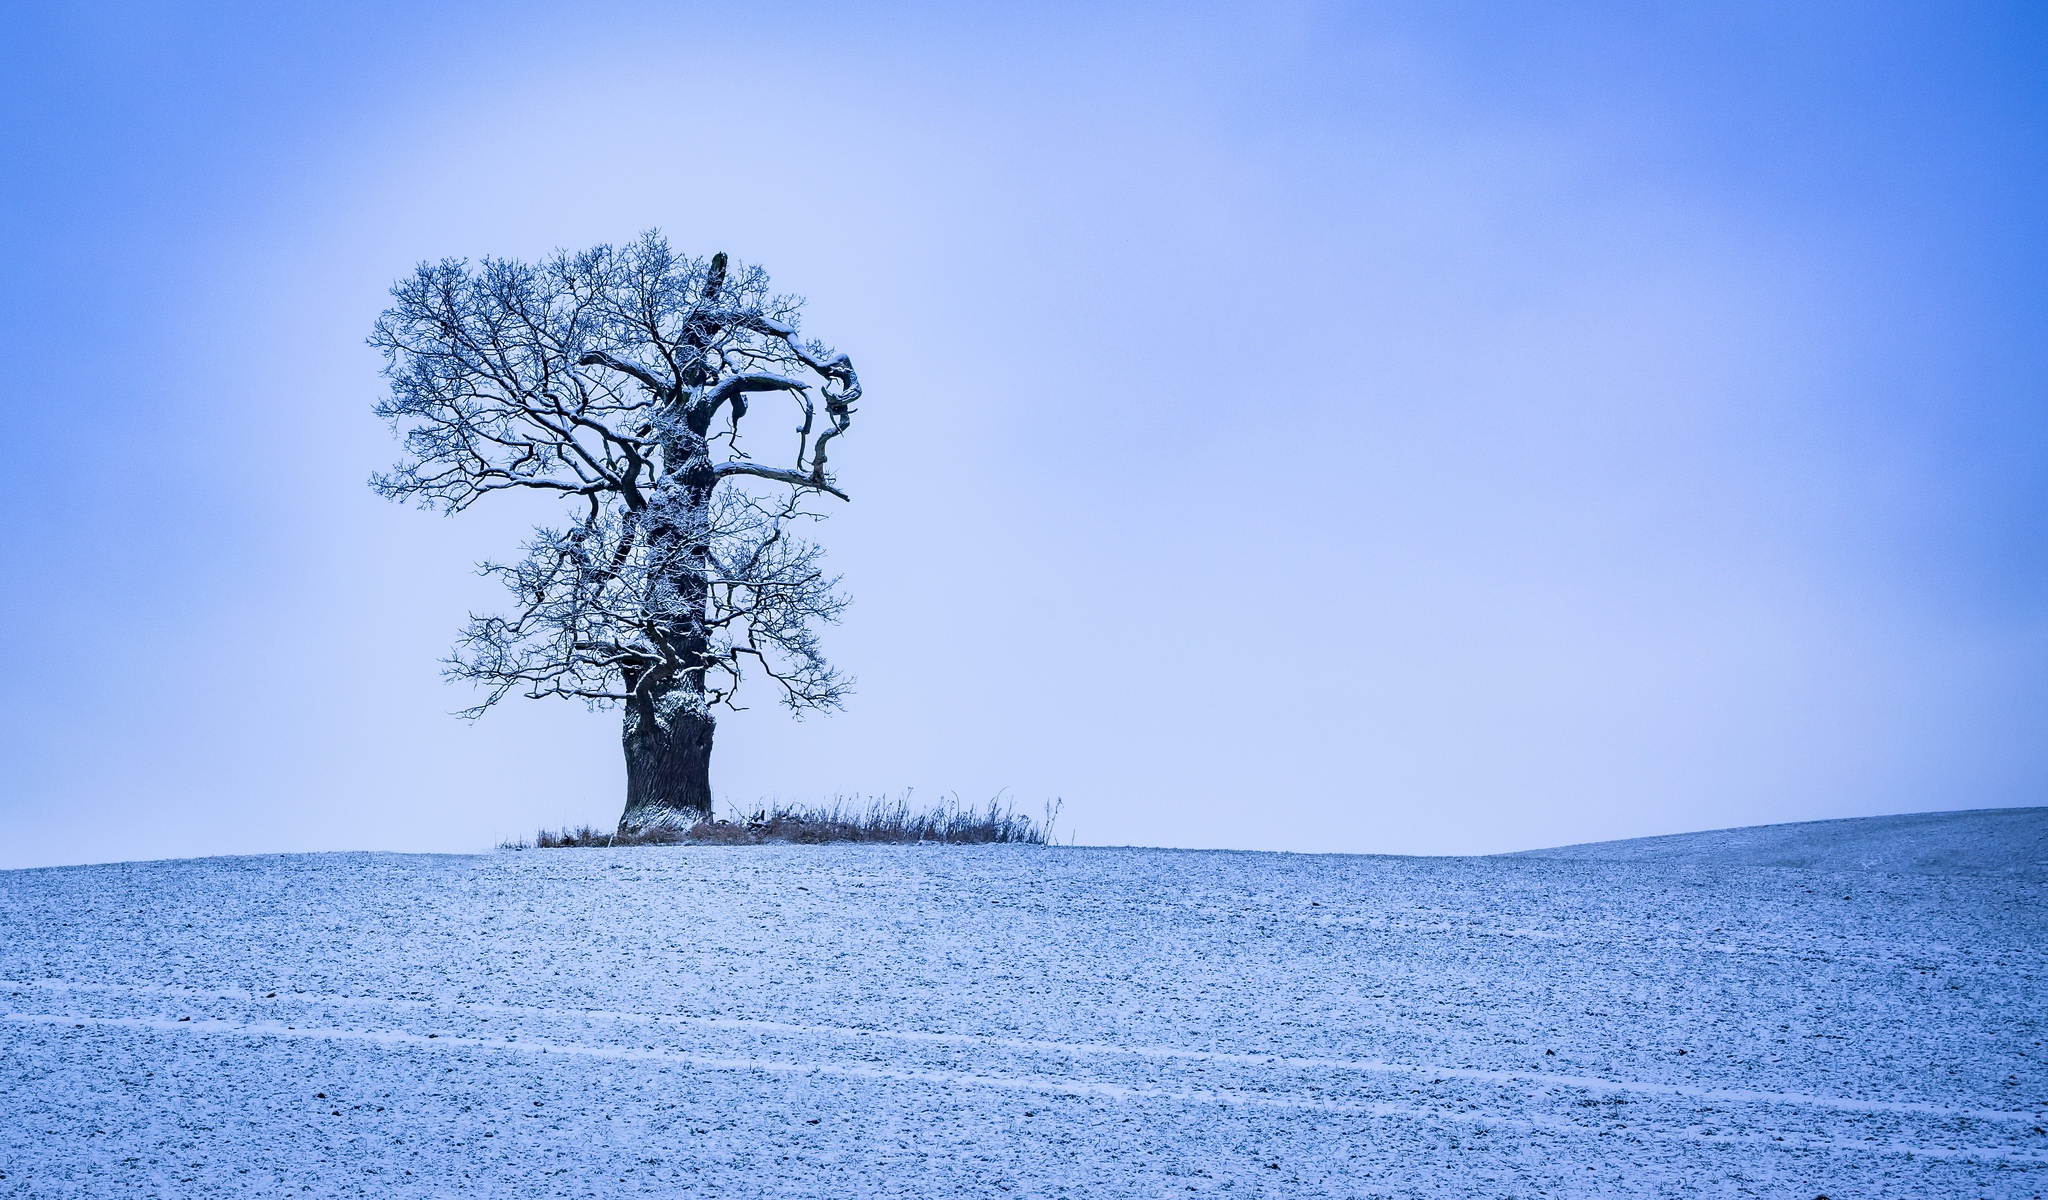 Скачать обои бесплатно Зима, Природа, Деревья, Дерево, Земля/природа, Одинокое Дерево картинка на рабочий стол ПК